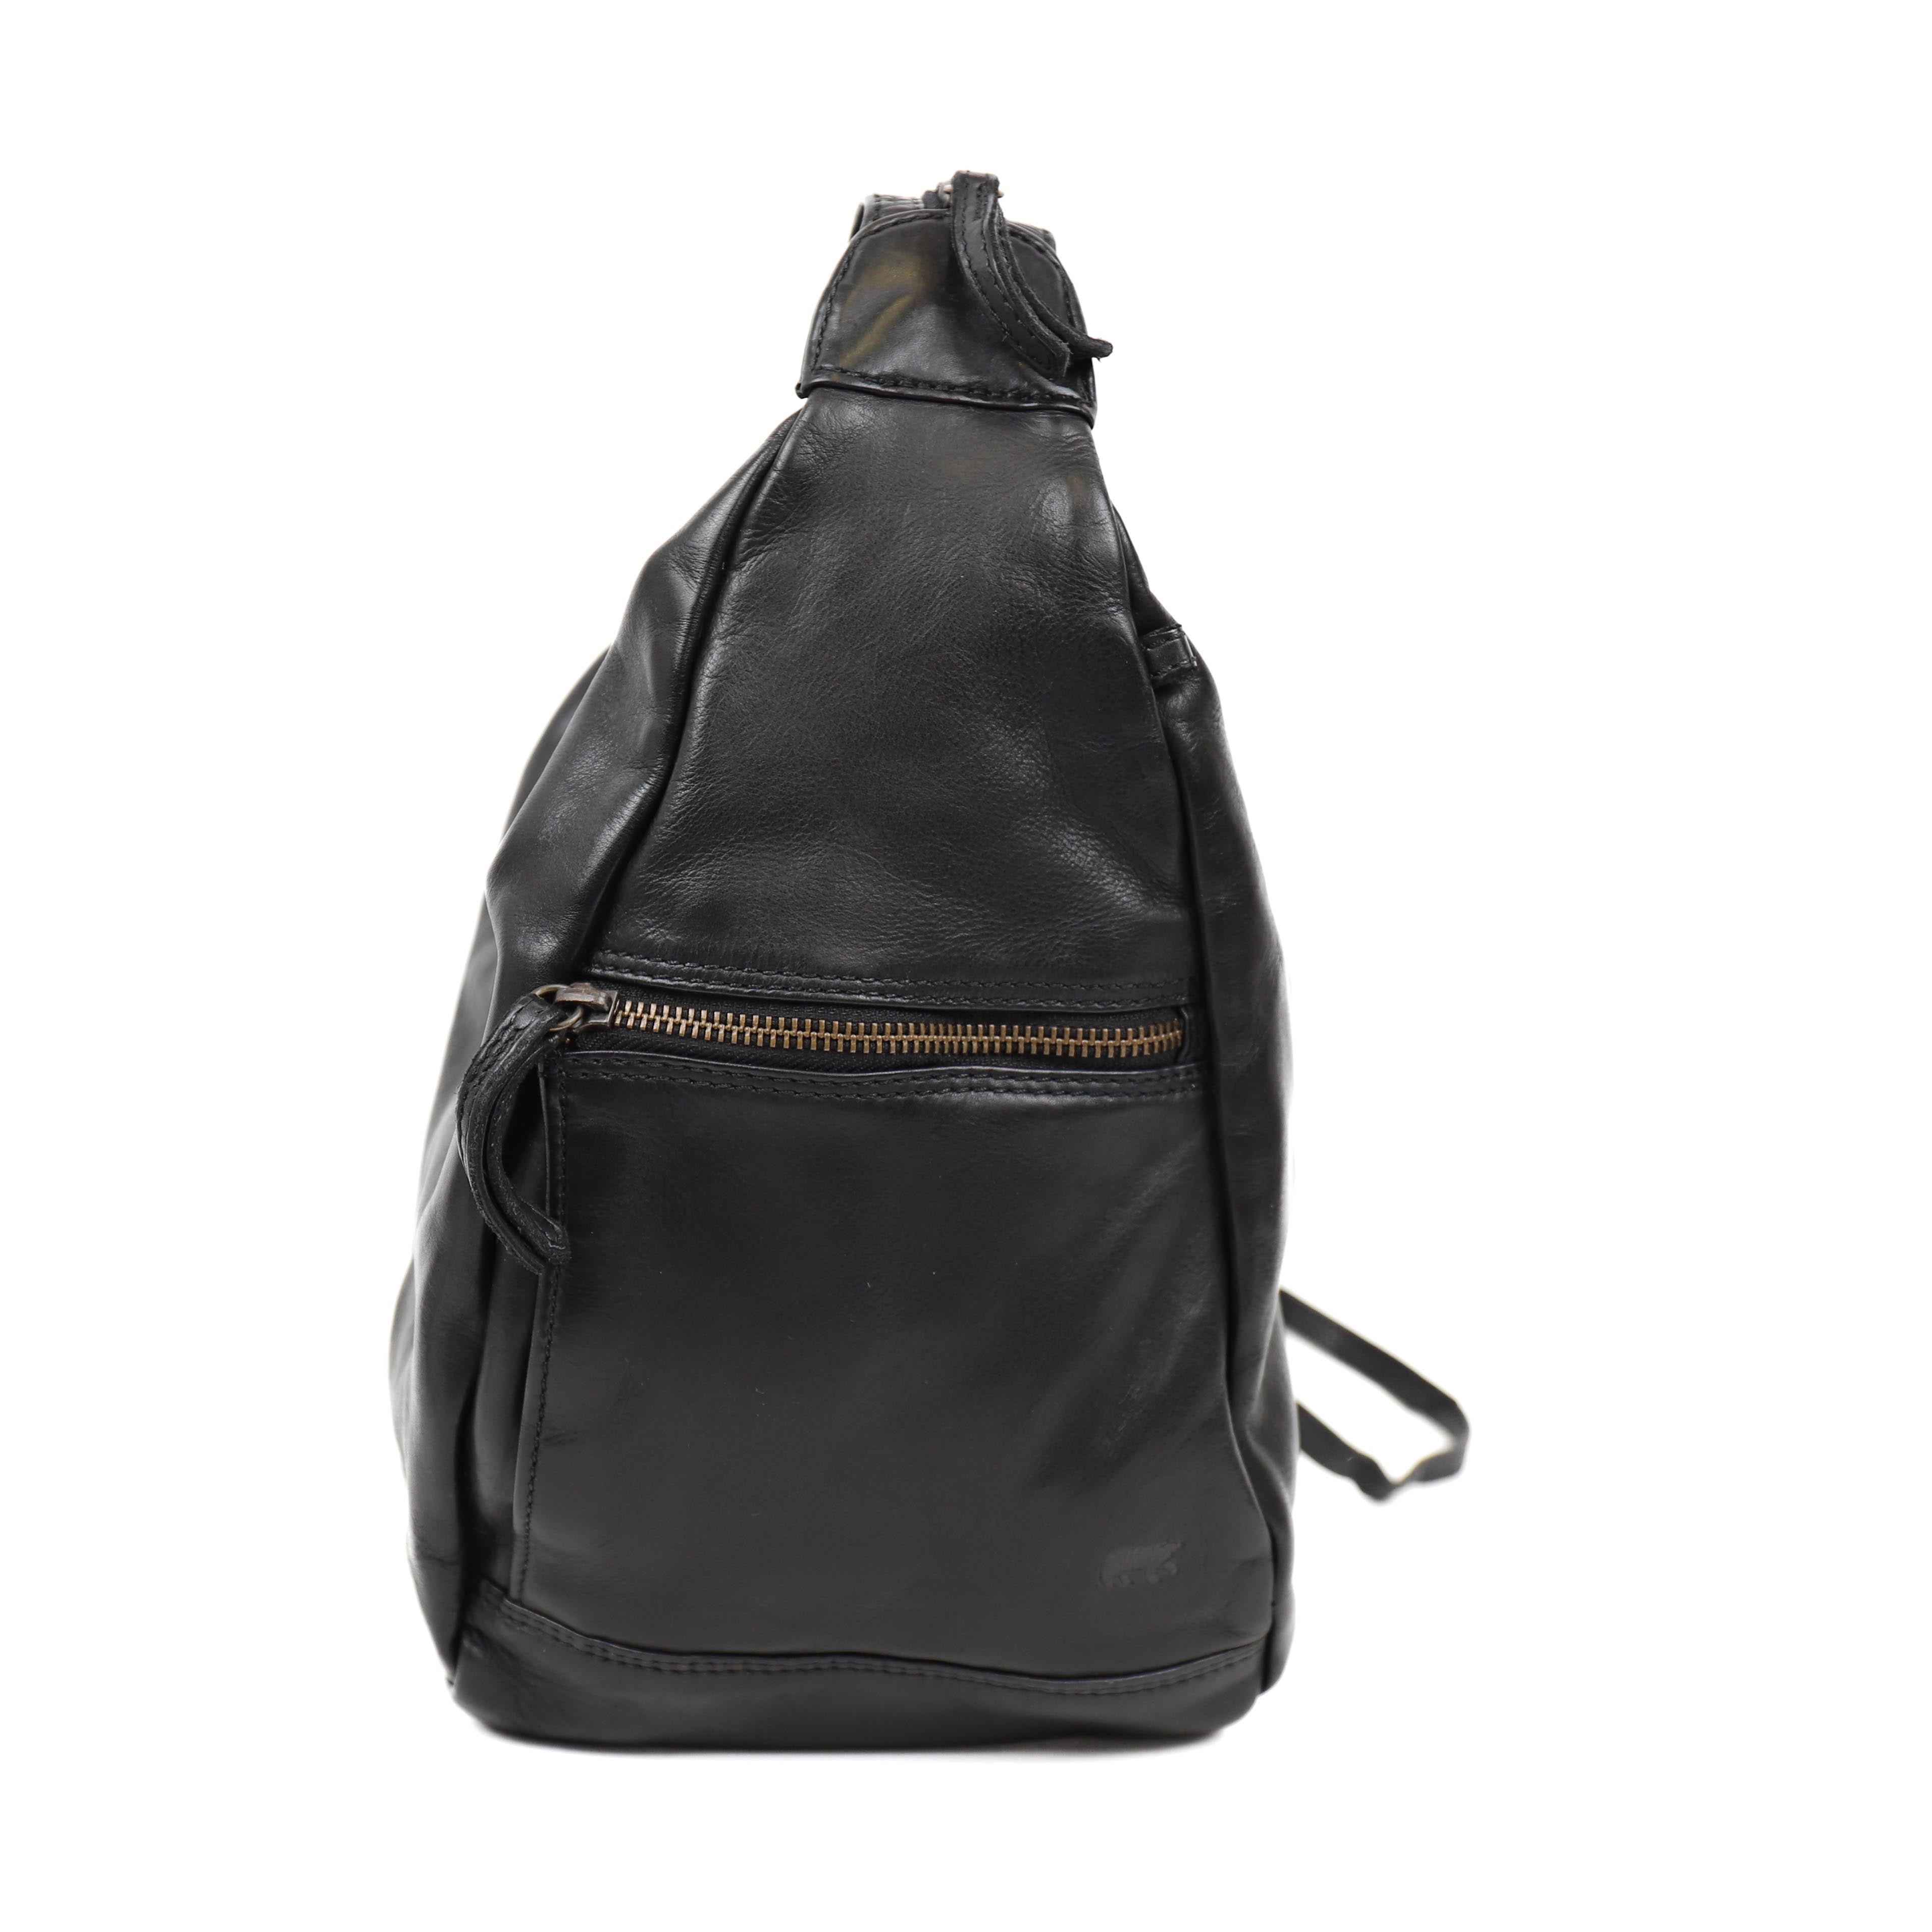 Backpack 'Hannie' black